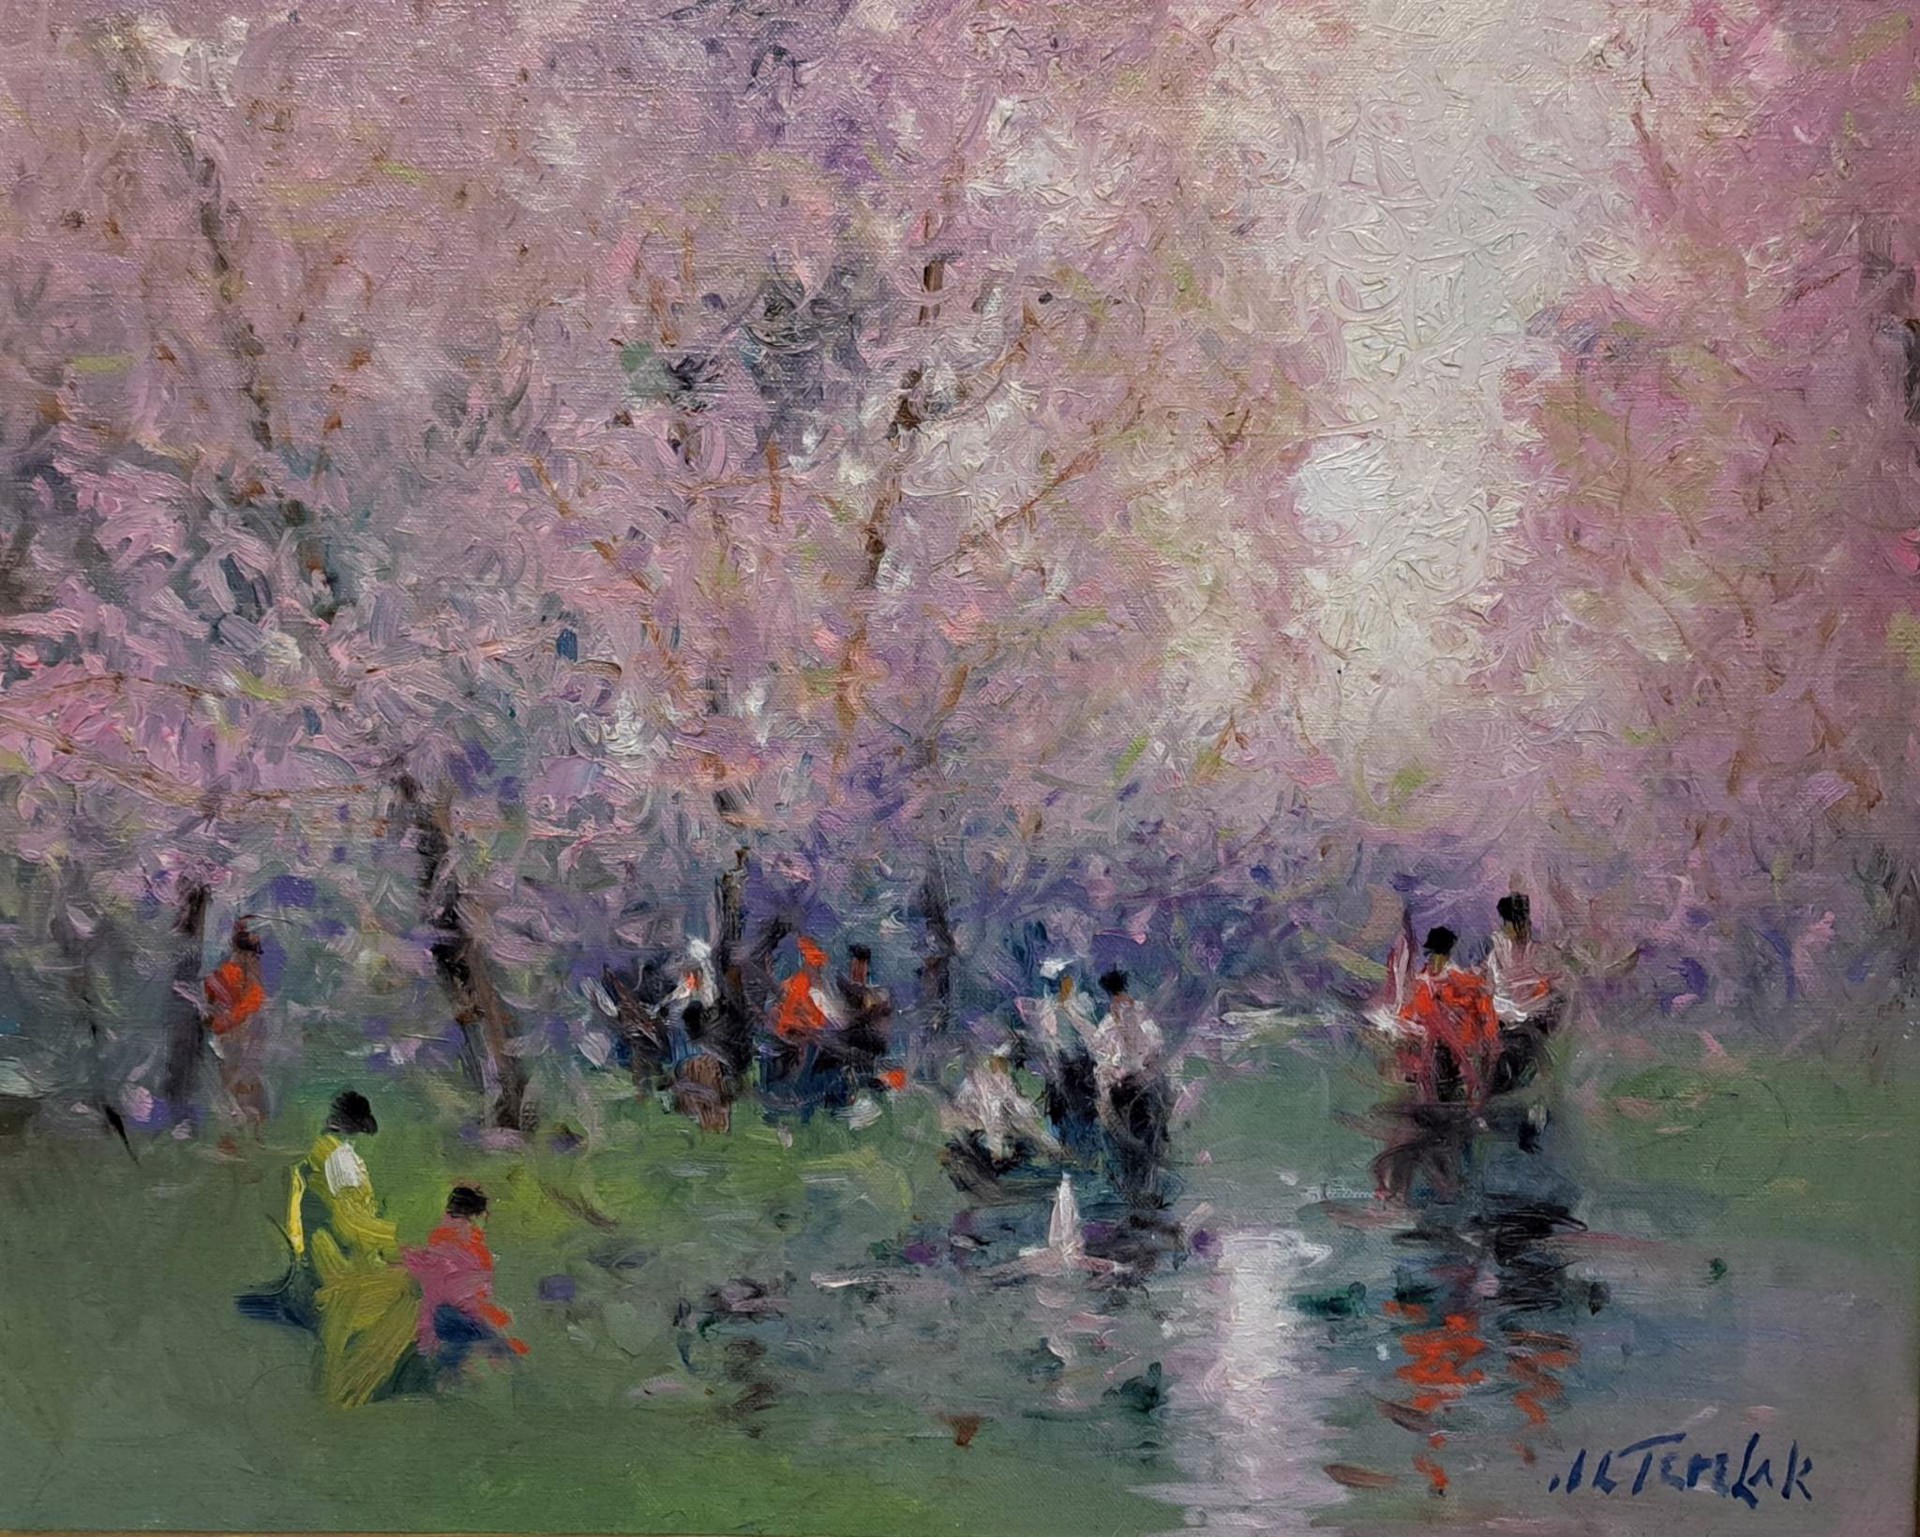 Spring in the Park by John Terelak